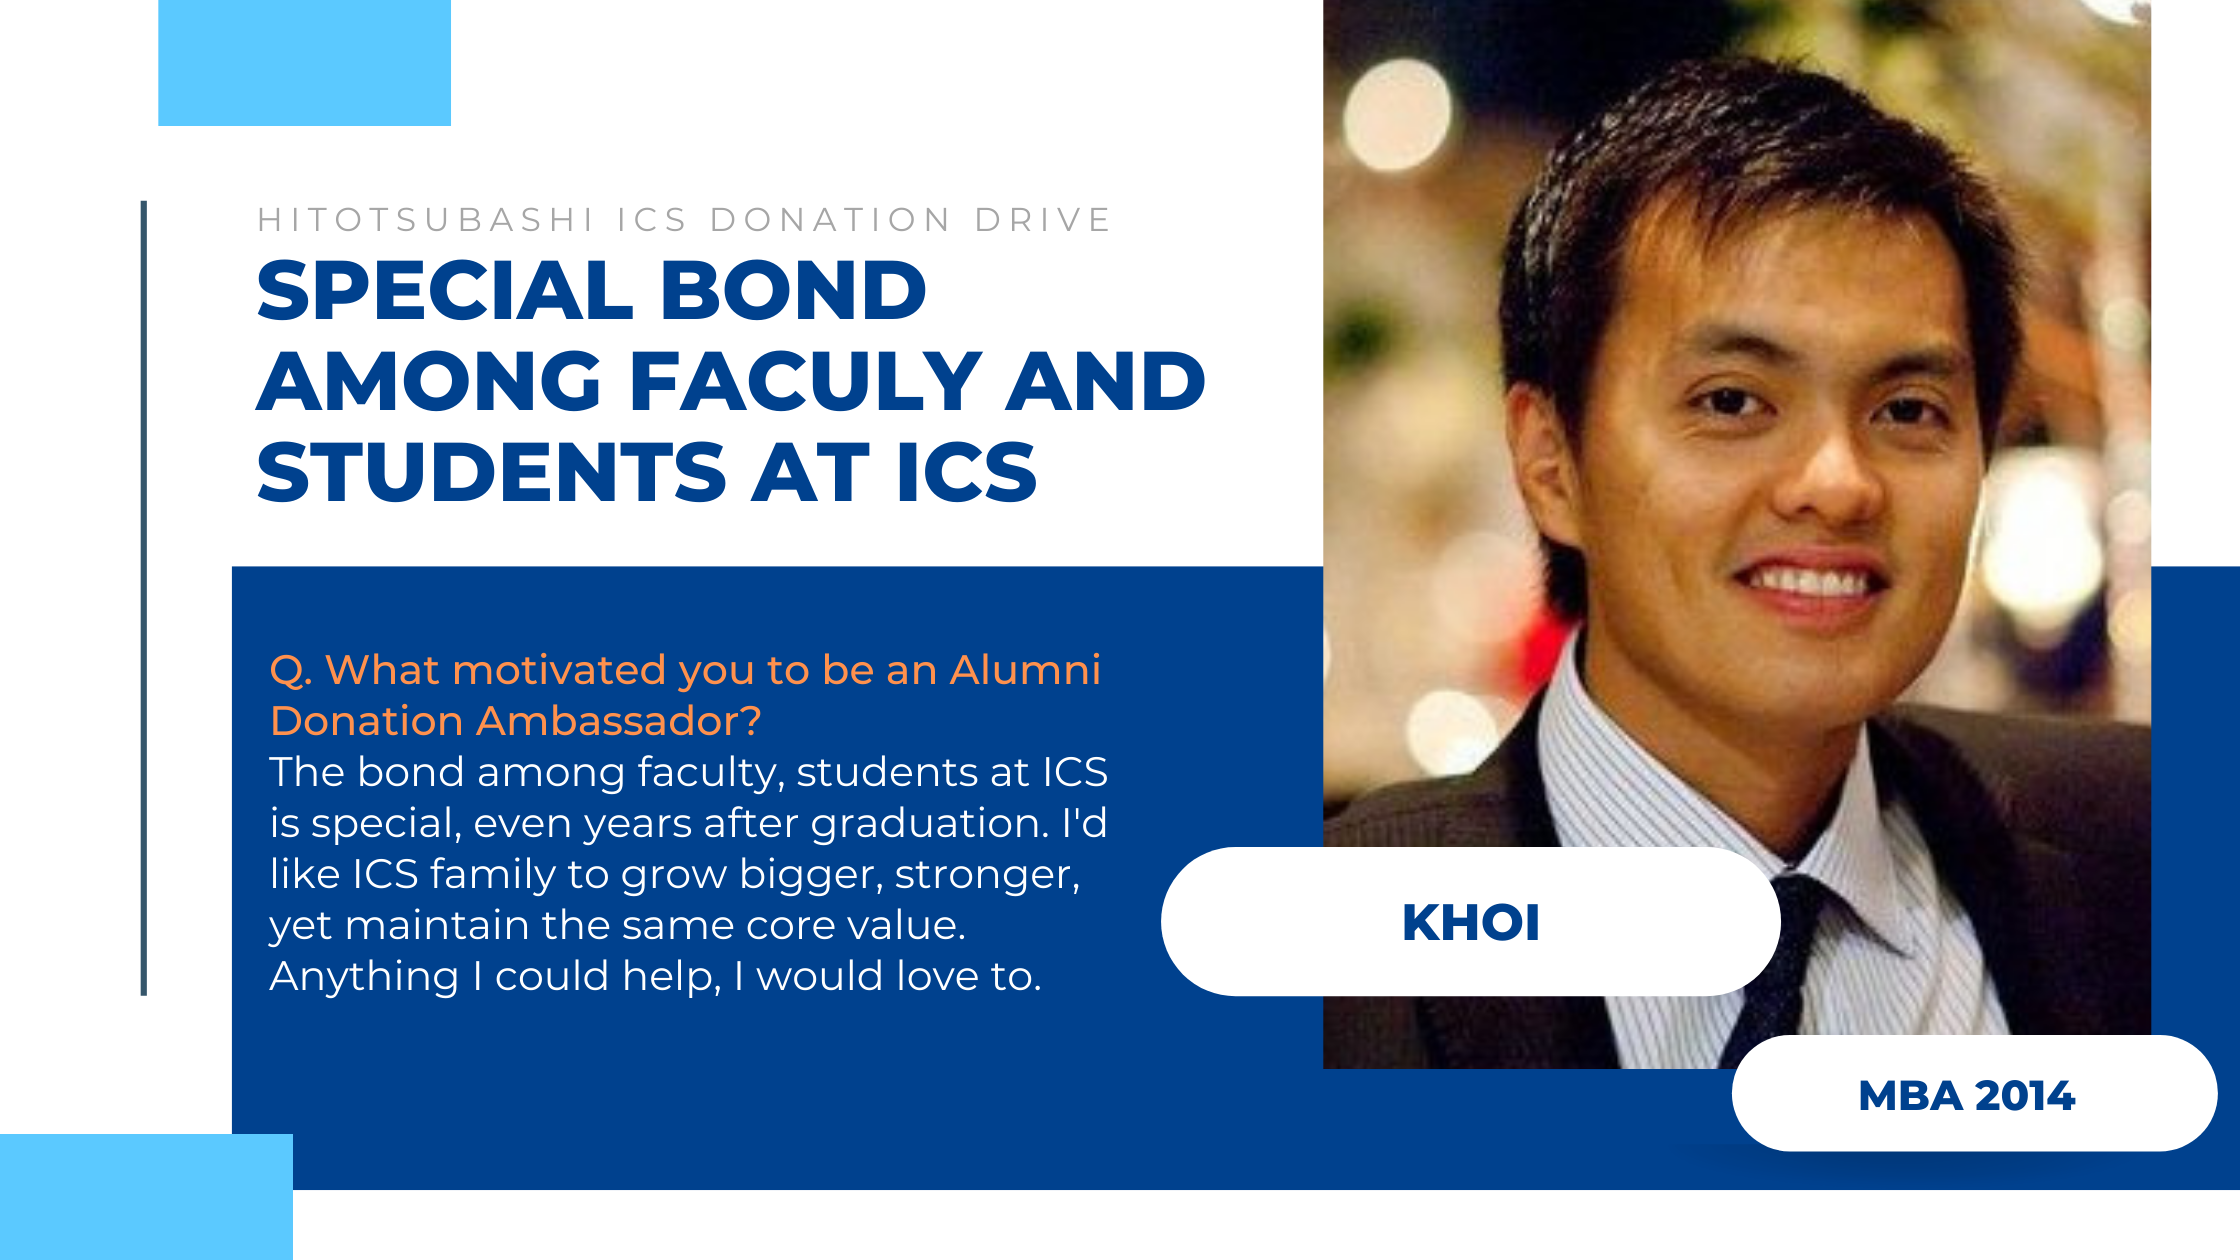 Hitotsubashi ICS ICS Alumni Donation Drive Ambassador Khoi